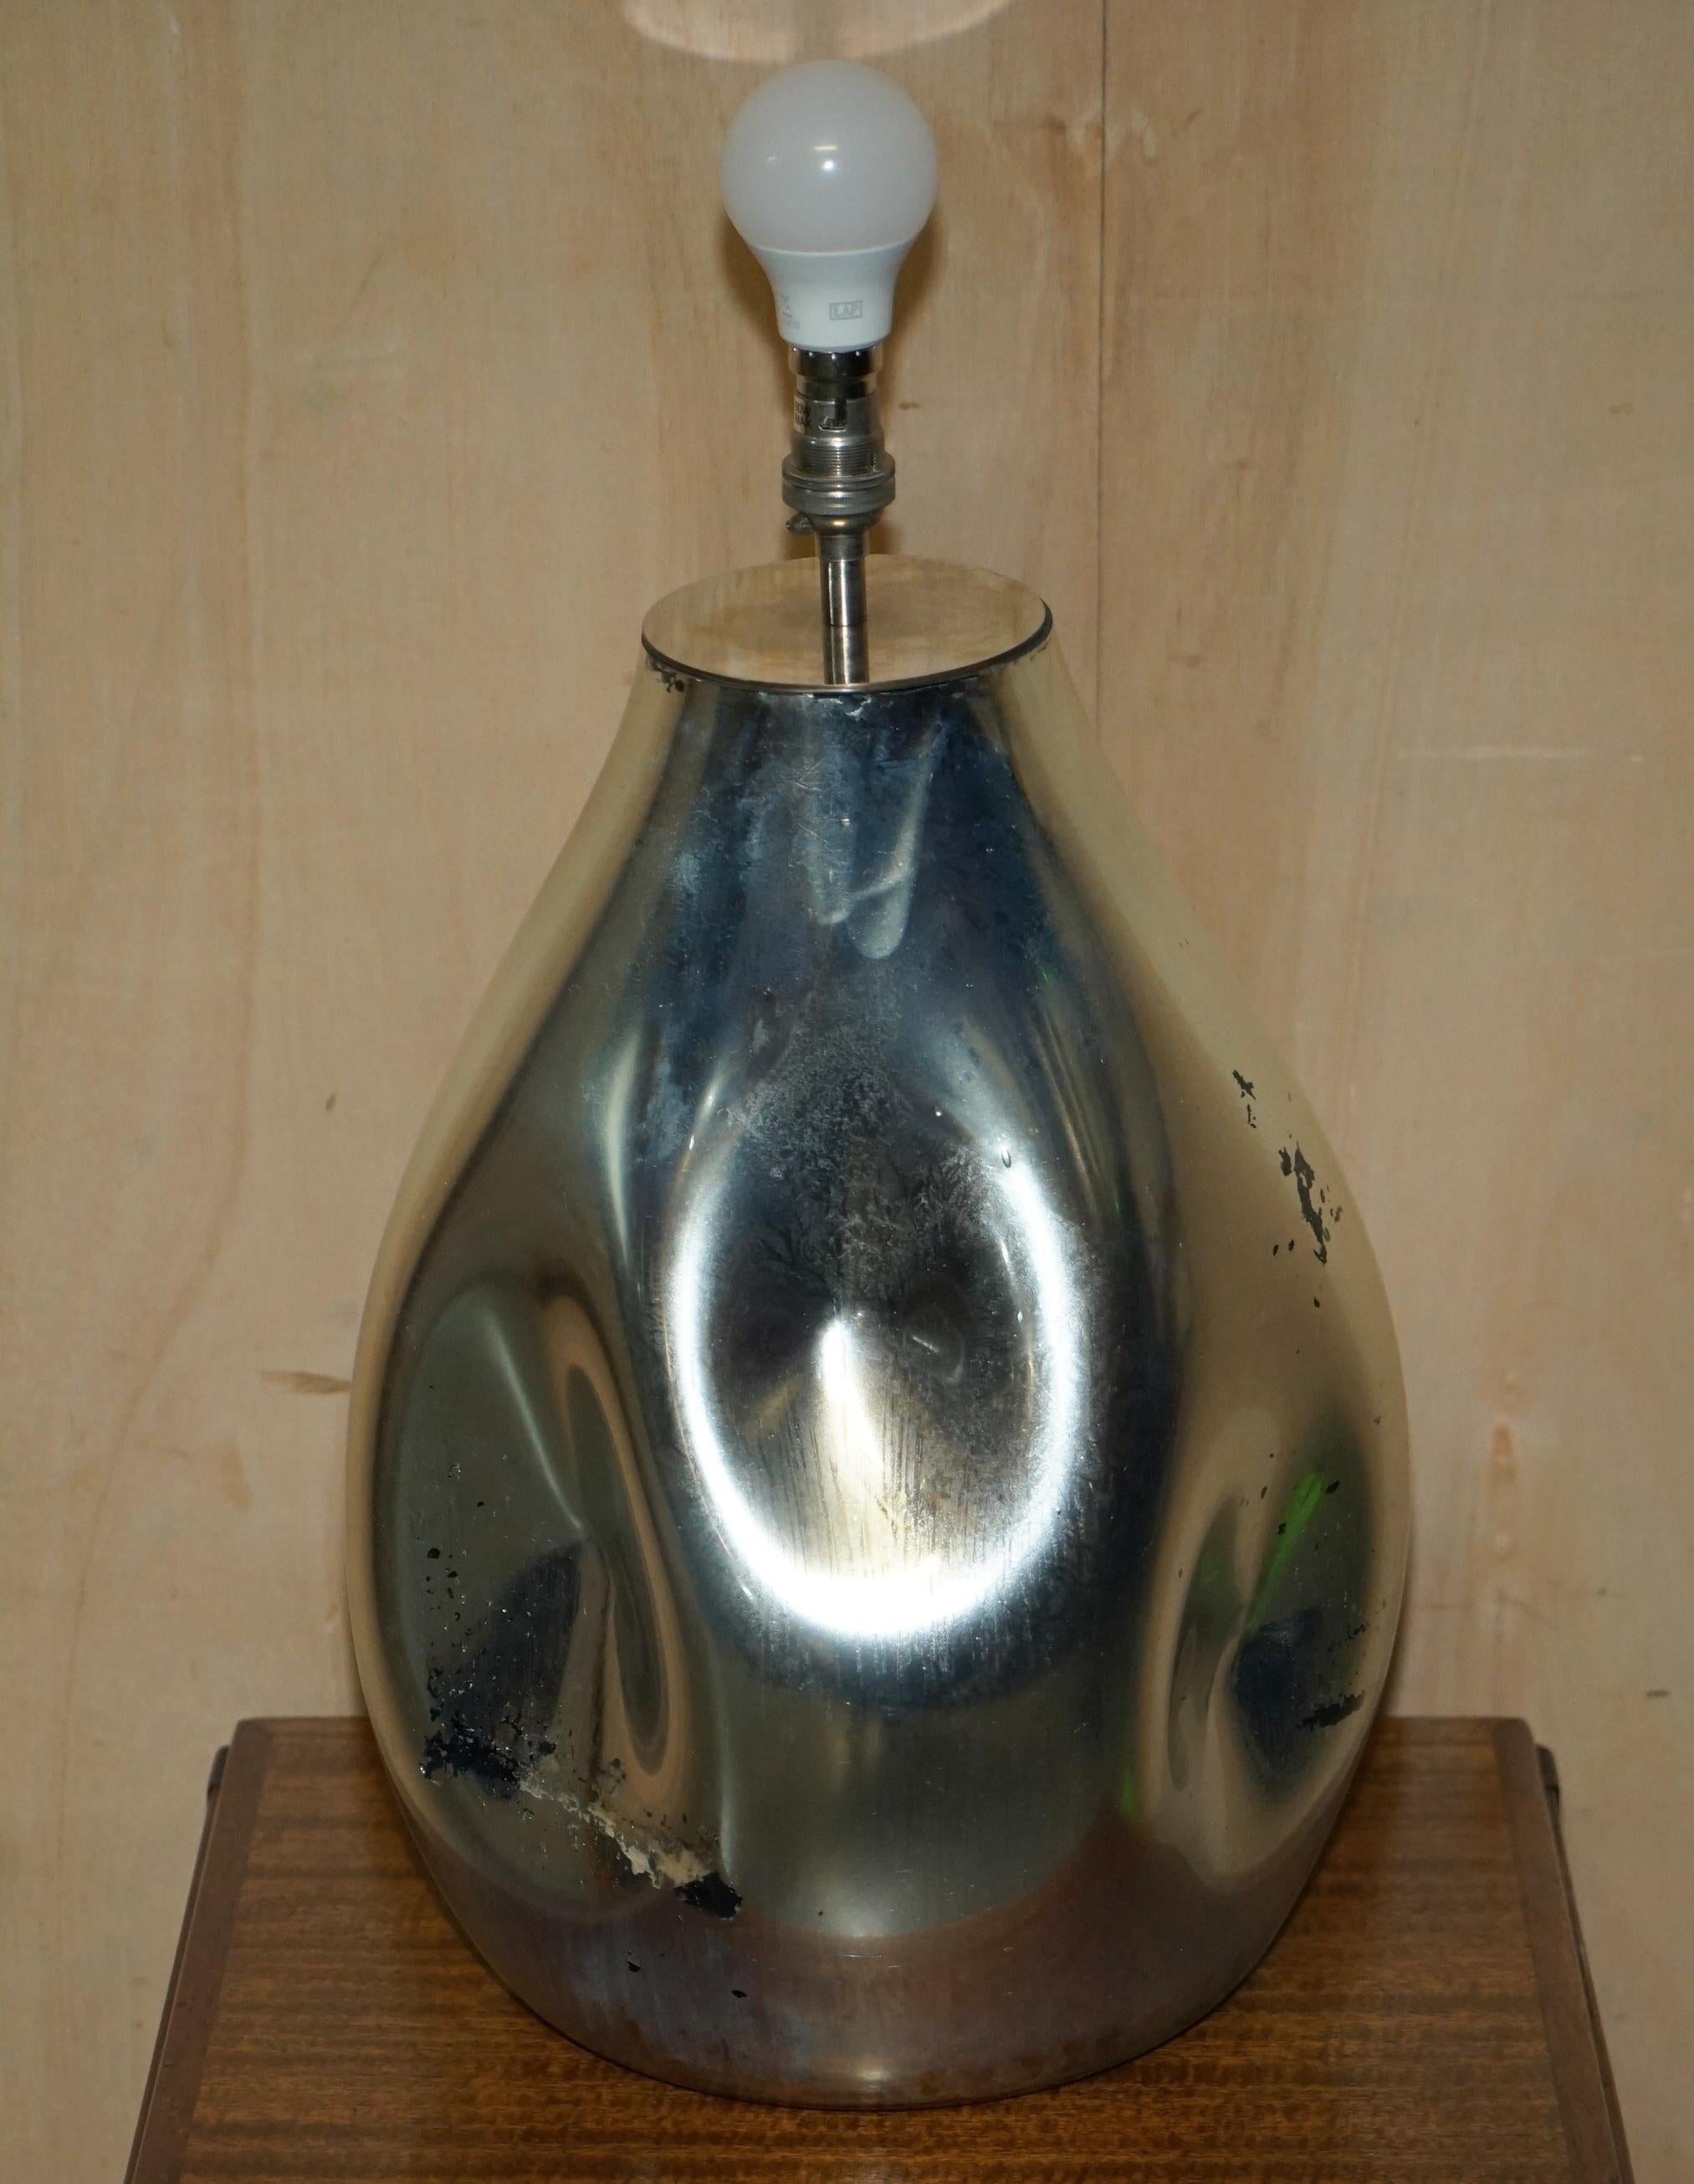 Nous sommes ravis d'offrir à la vente cette superbe lampe de table sculpturale artistique en verre renard miroité.

Cette lampe est en verre miroir solide qui, en raison de l'âge, a quelques rousseurs très désirables par endroits, cela ressemble à